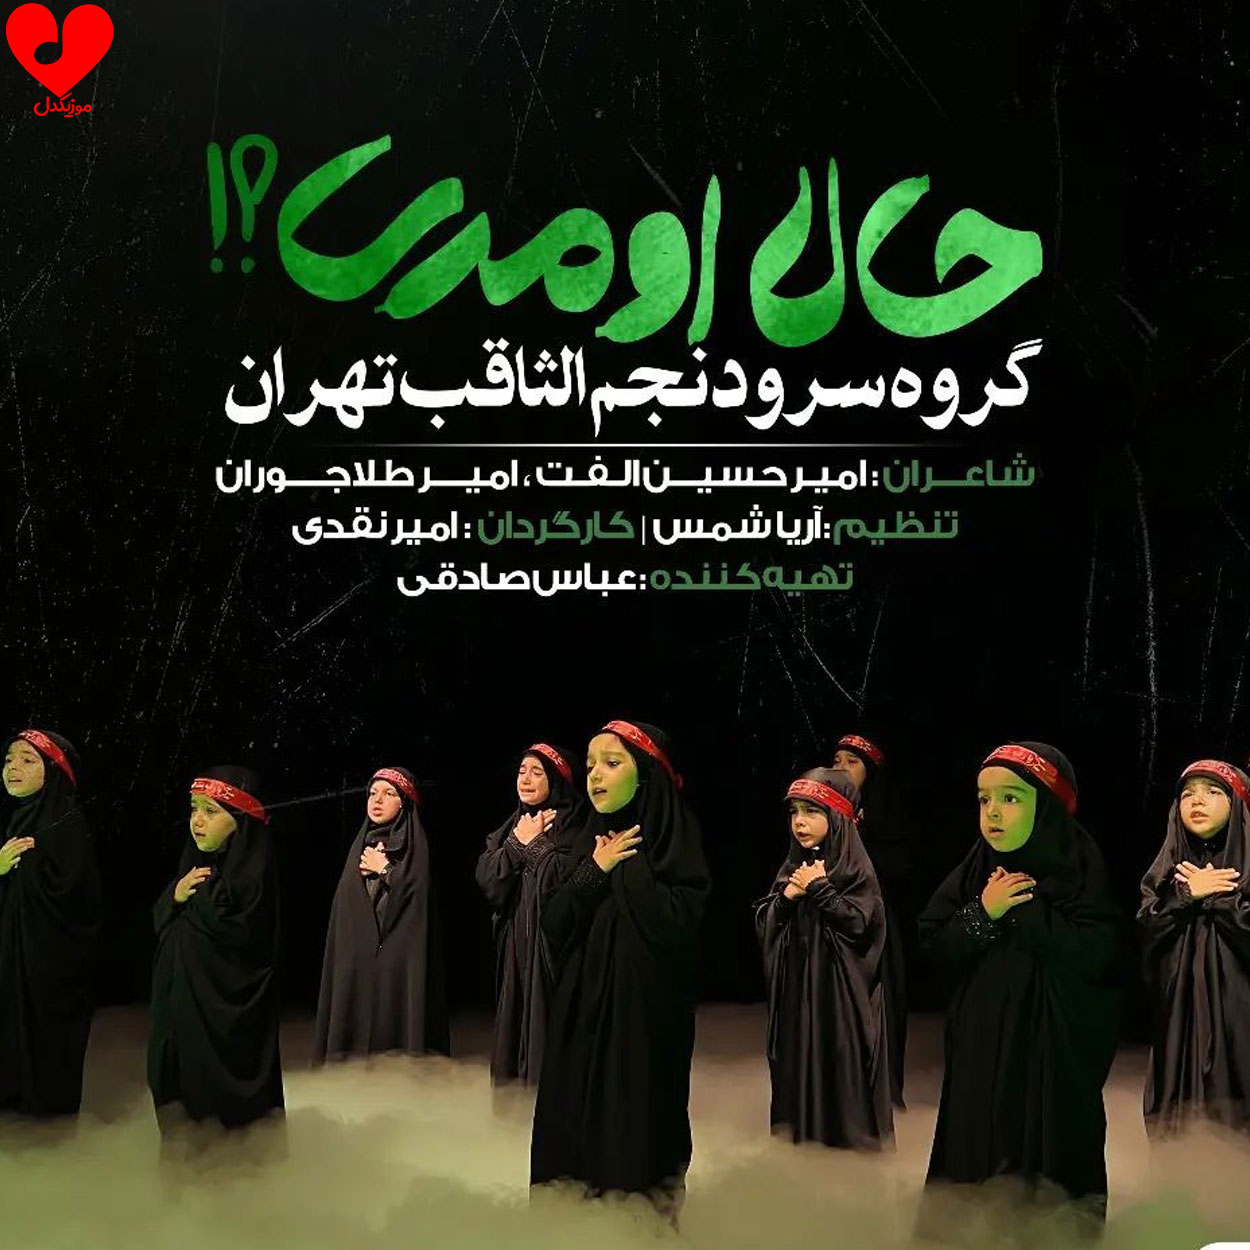 دانلود آهنگ بابایی حضرت رقیه از گروه سرود نجم الثاقب + متن نماهنگ